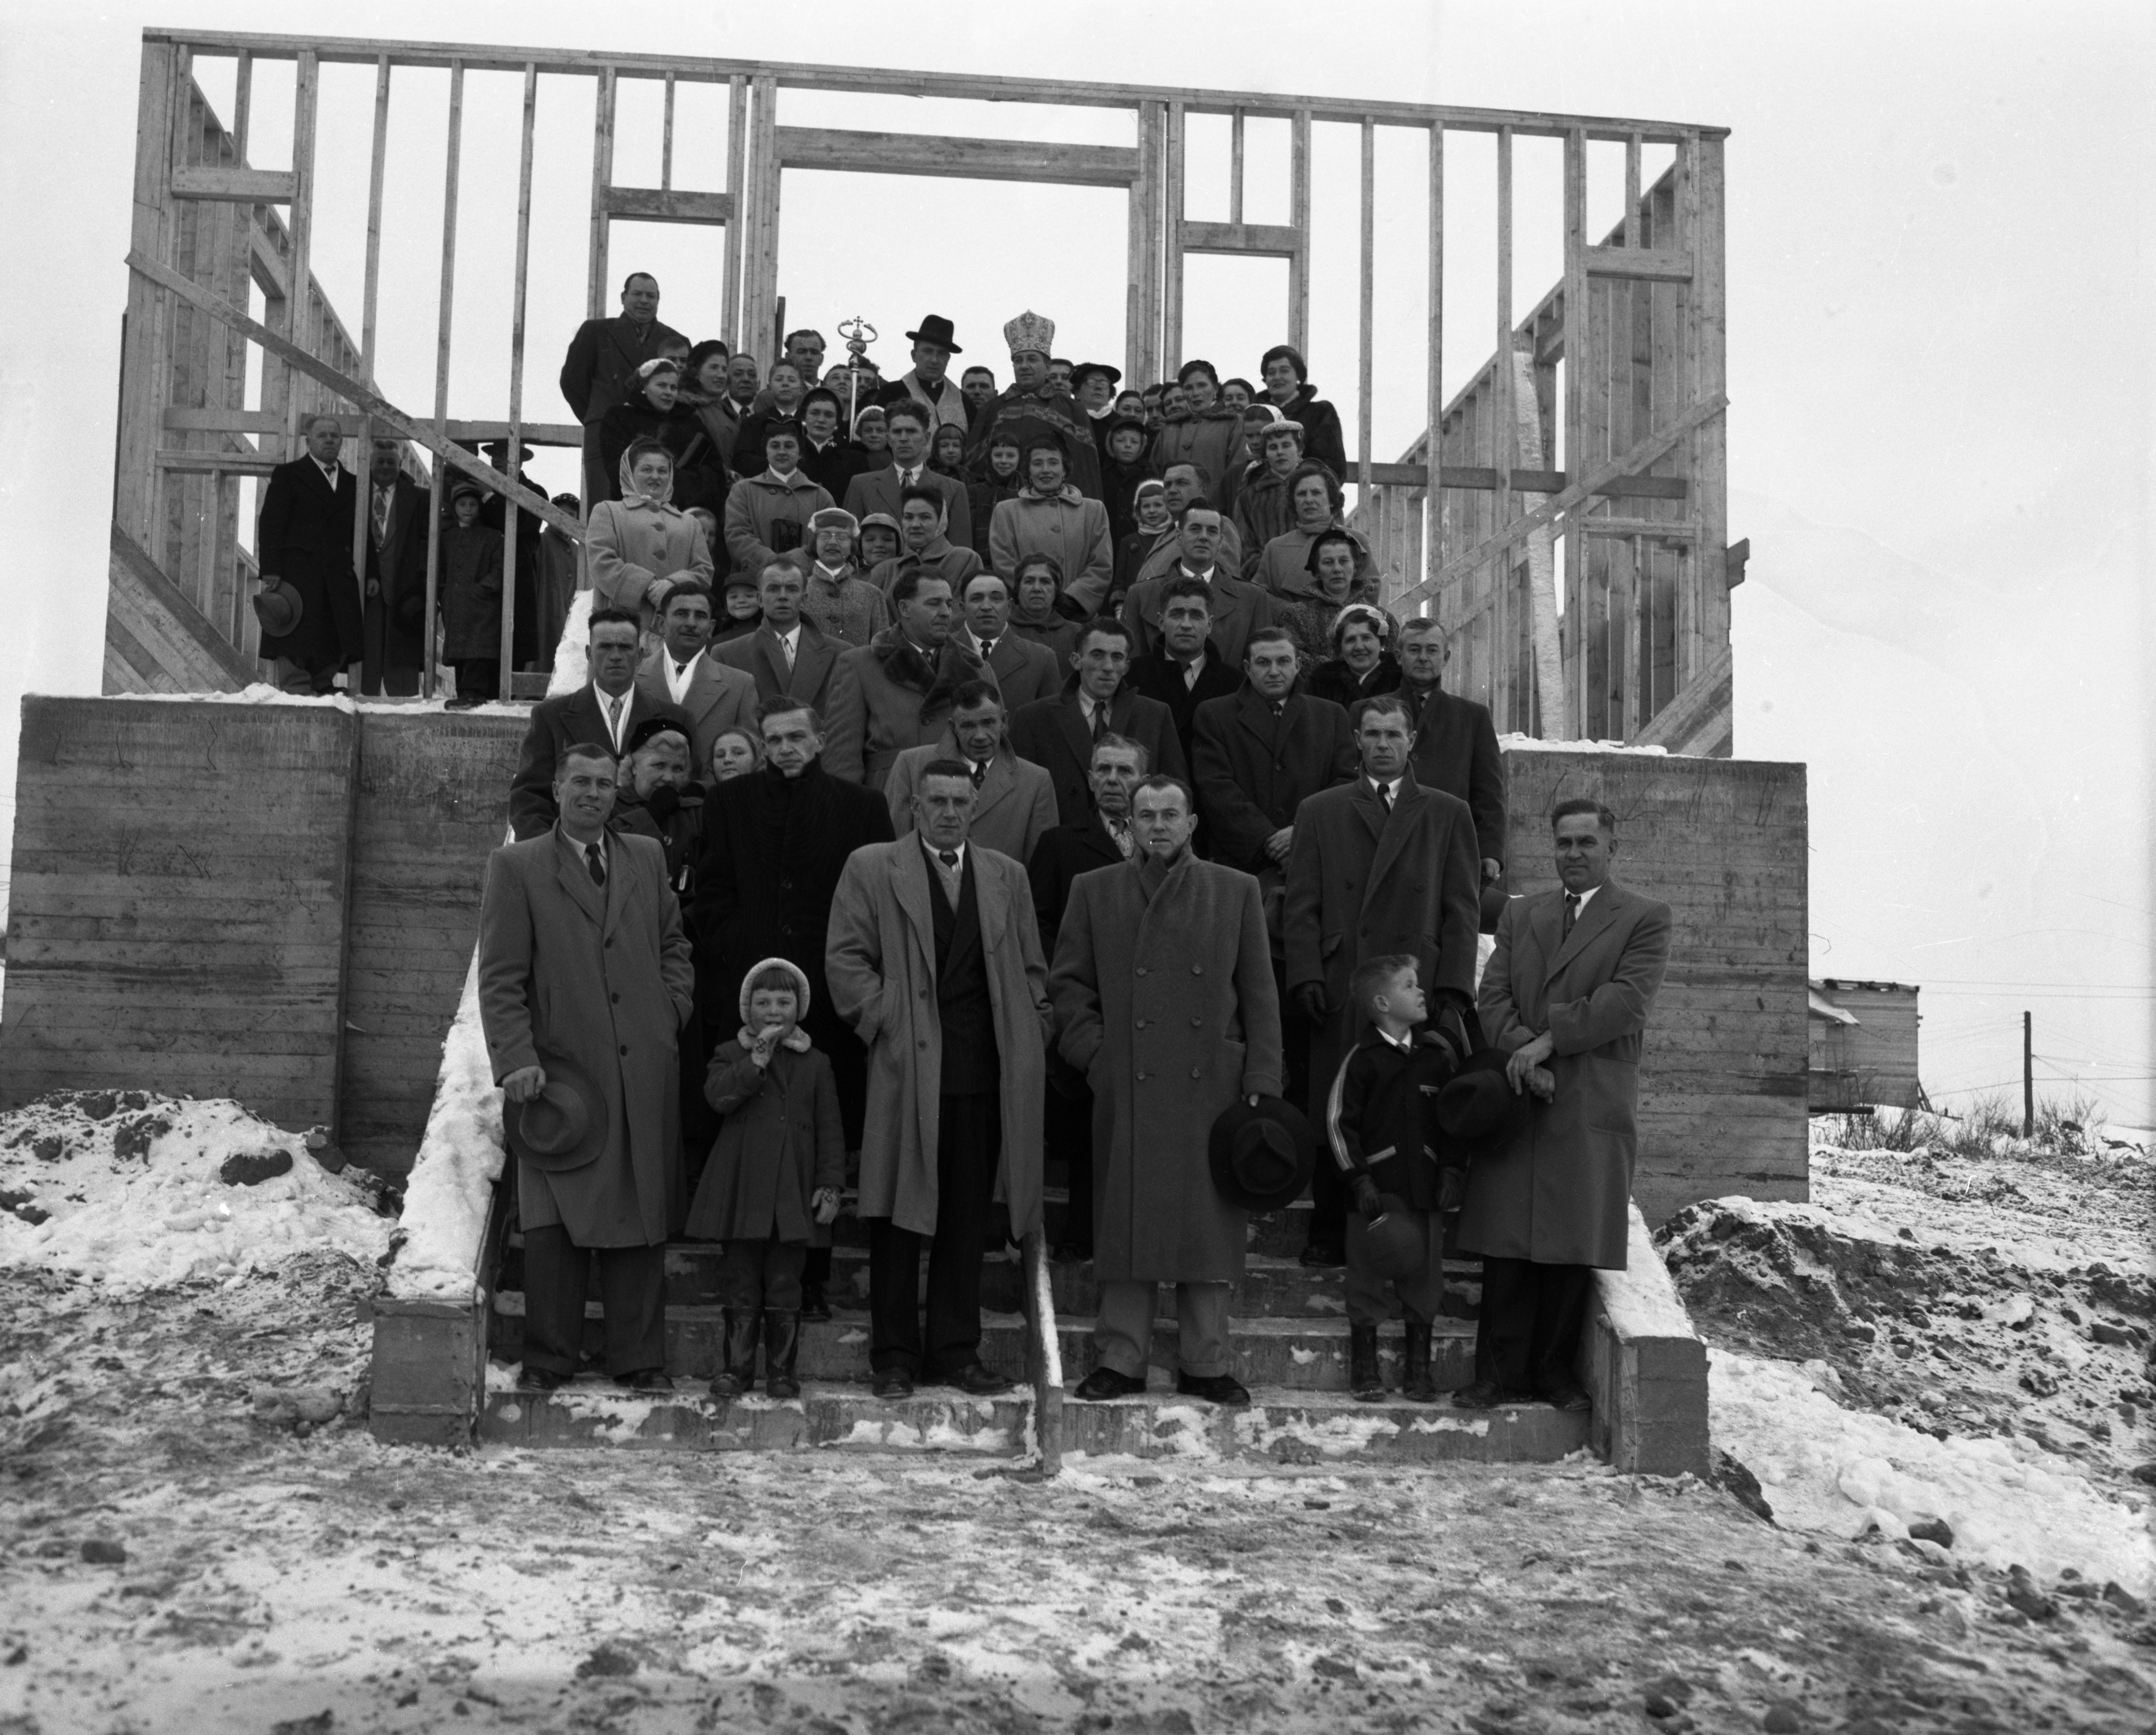 Photographie en noir et blanc d’environ soixante-dix personnes dans des escaliers devant une structure de bois. Dont deux prêtres catholiques, un romain et un ukrainien. 